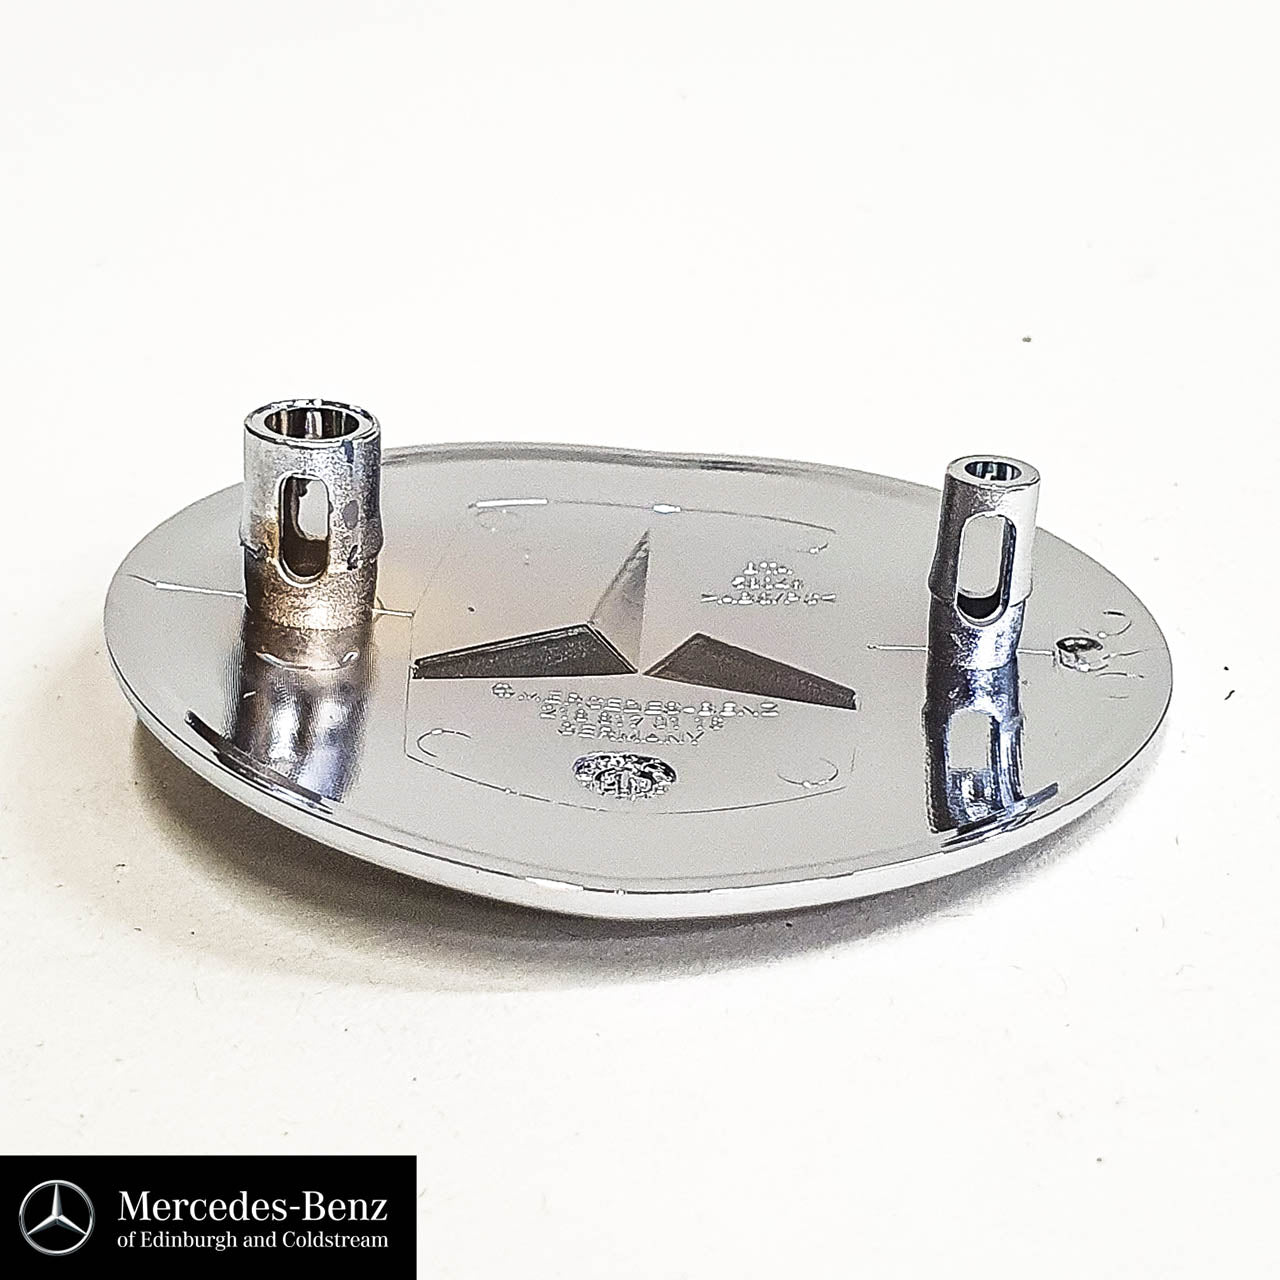 Genuine Mercedes-Benz Bonnet Badge front emblem Star logo